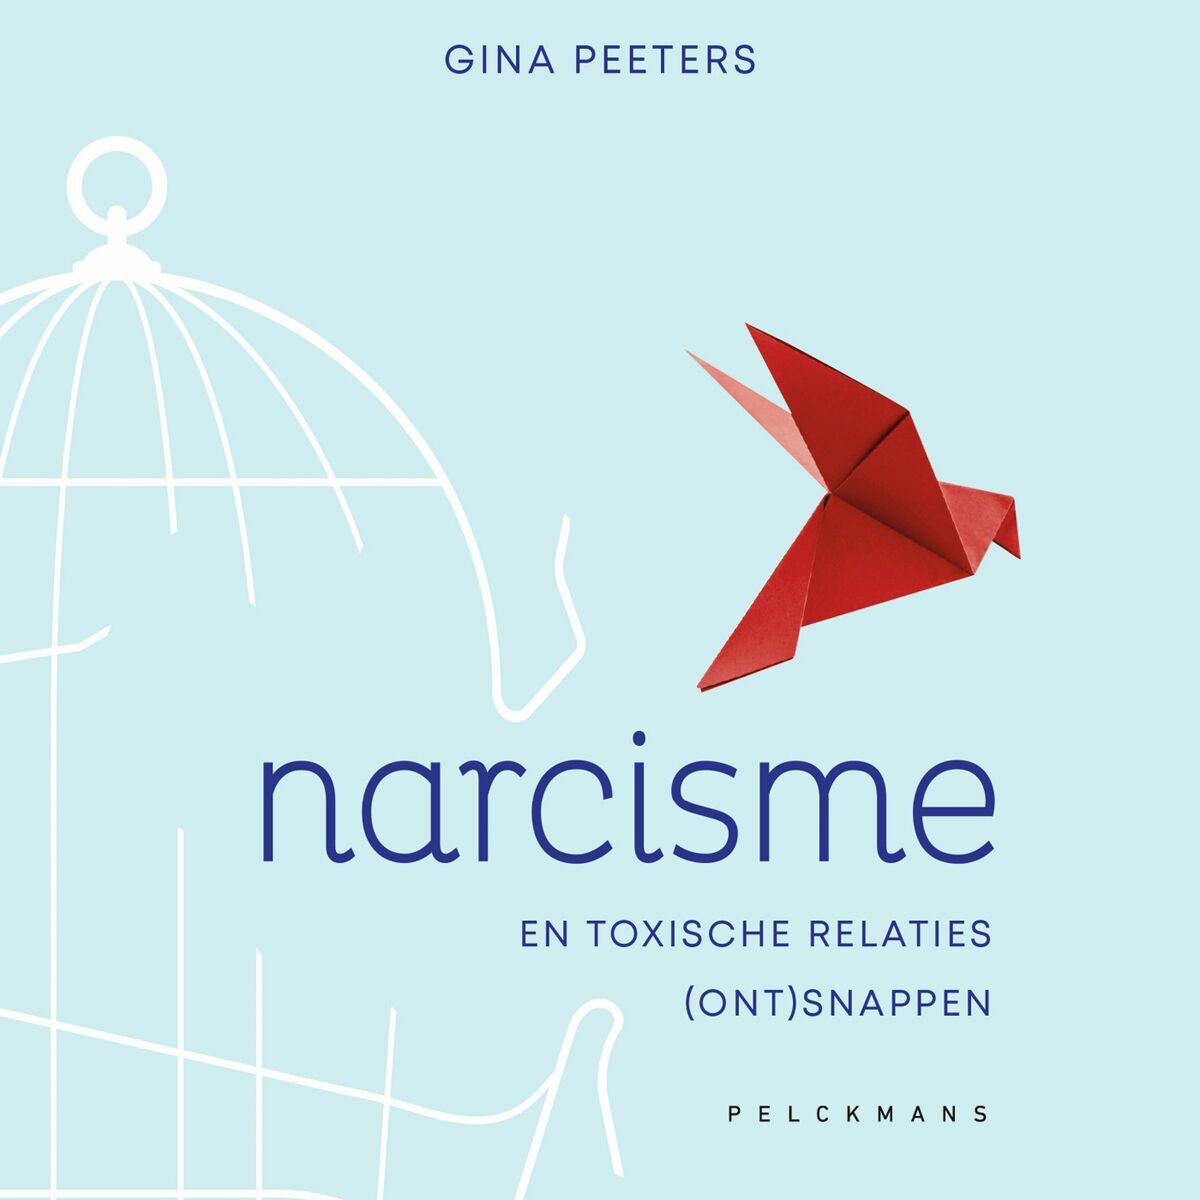 Narcisme (ont)snappen (audiobook)